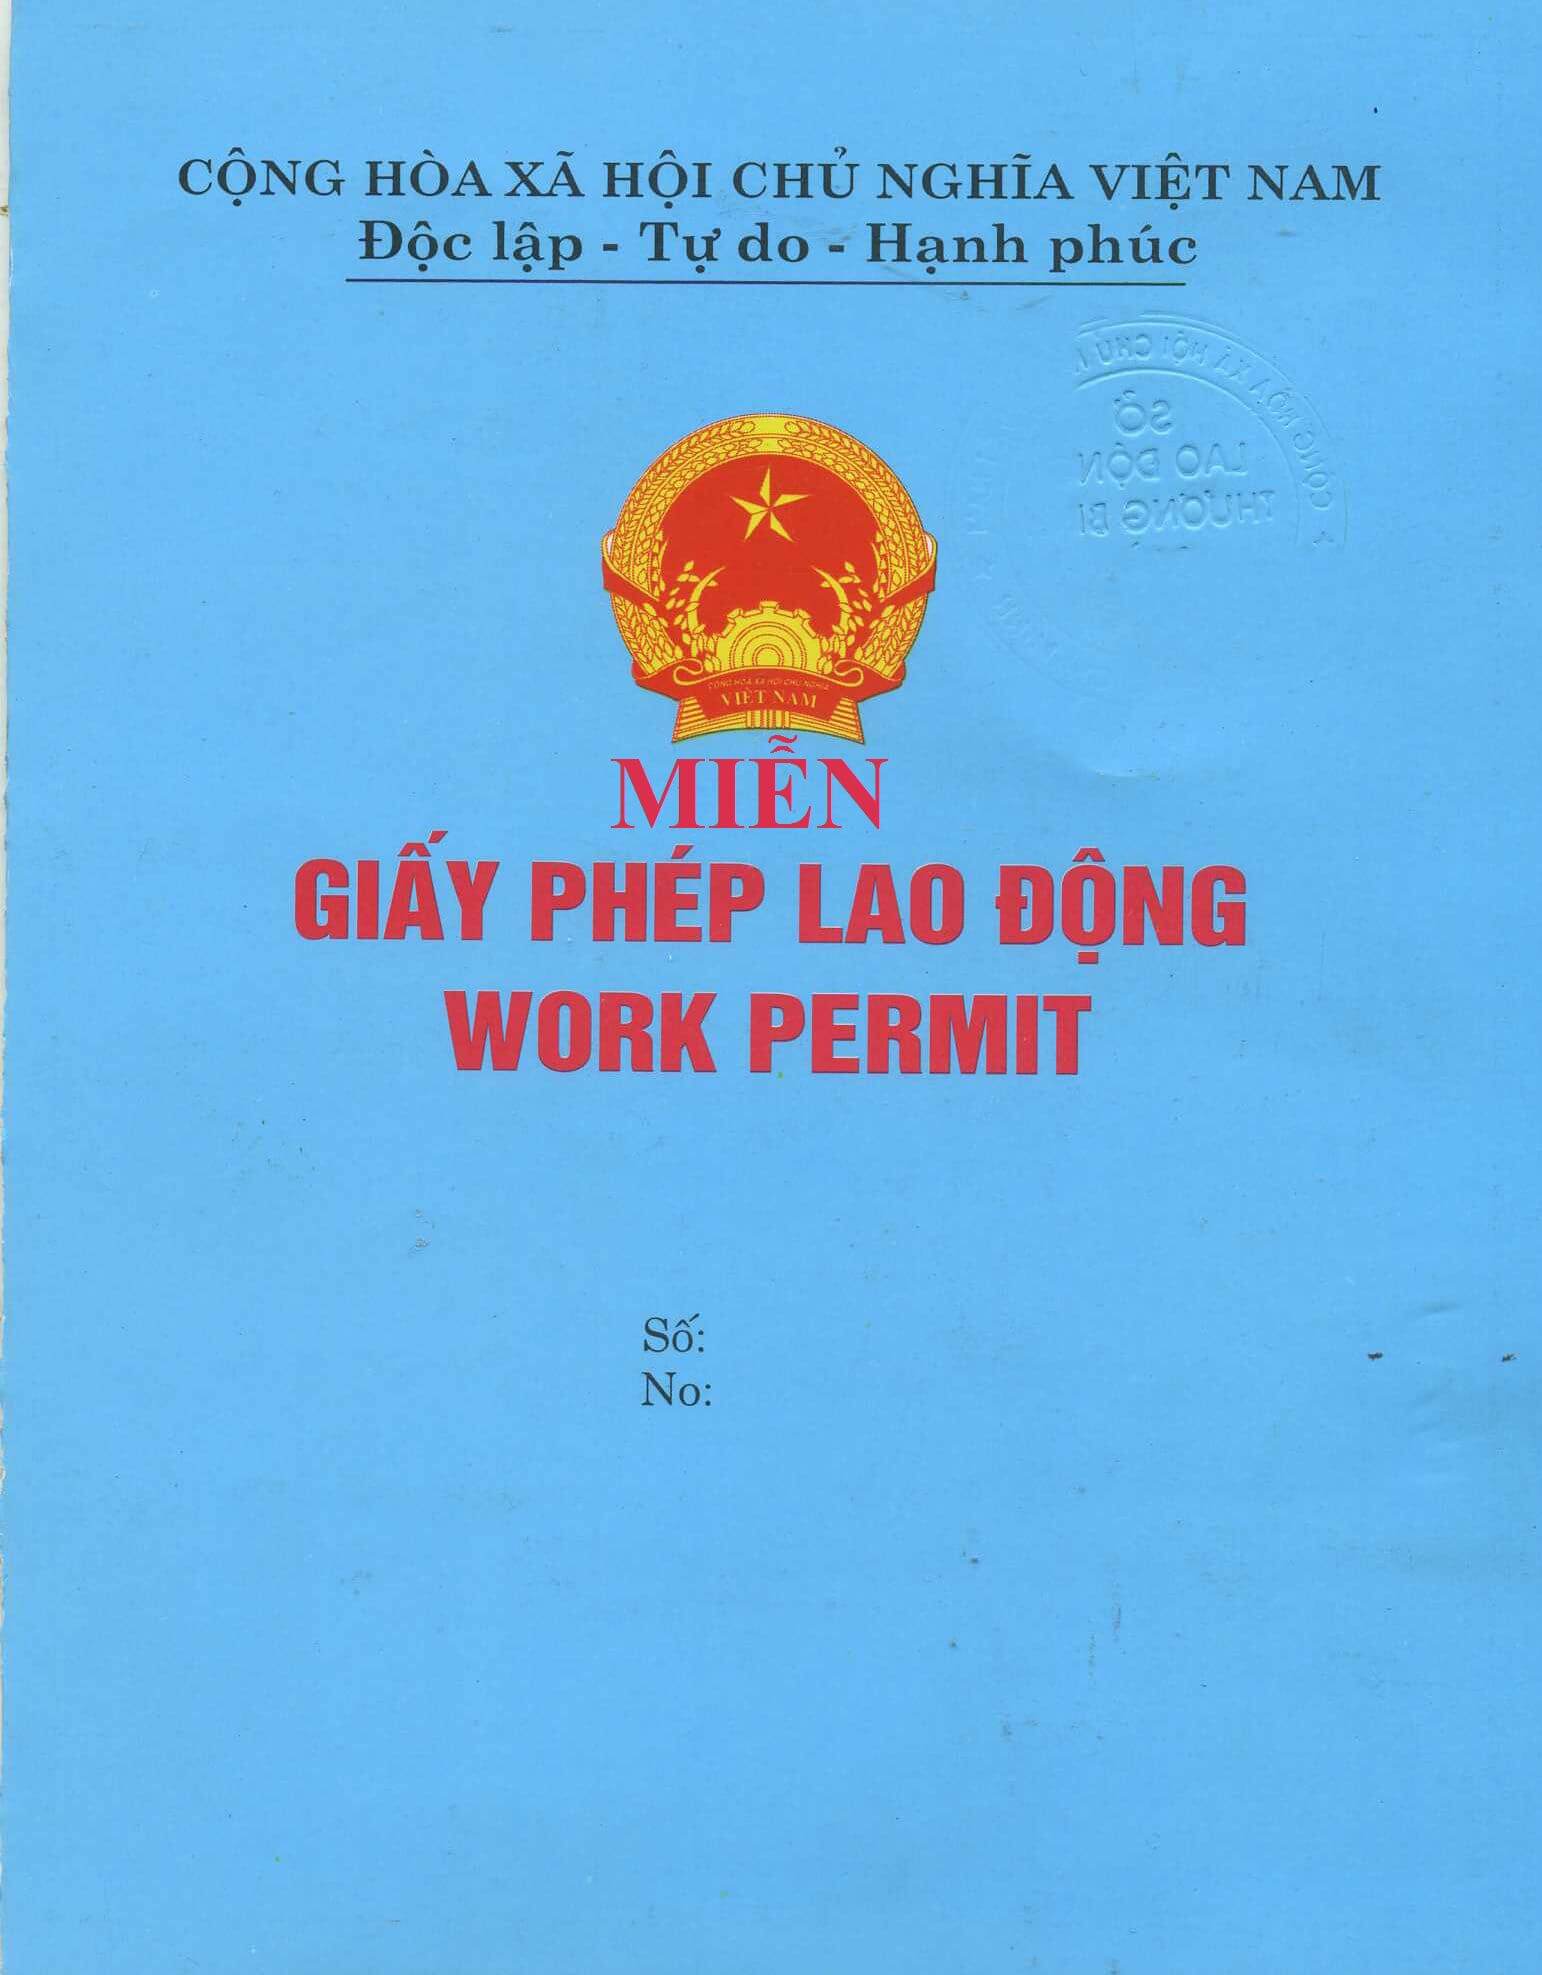 Các trường hợp người lao động nước ngoài không thuộc diện cấp giấy phép lao động tại Việt Nam